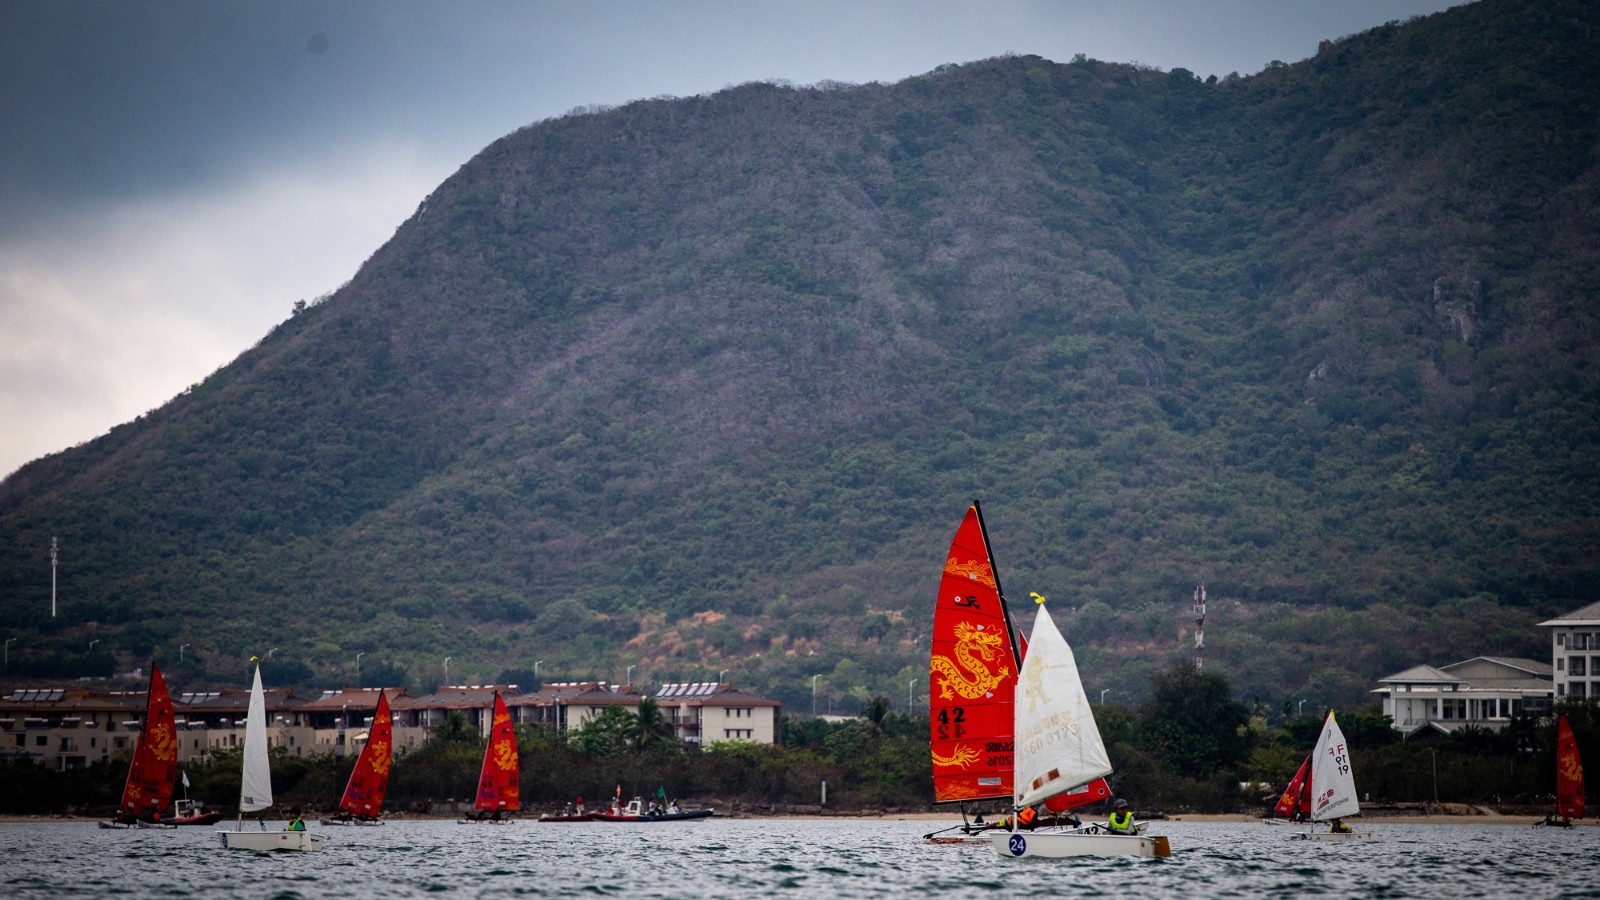 20190309czf第十届环海南岛国际帆船赛（三亚）-8663995.jpg